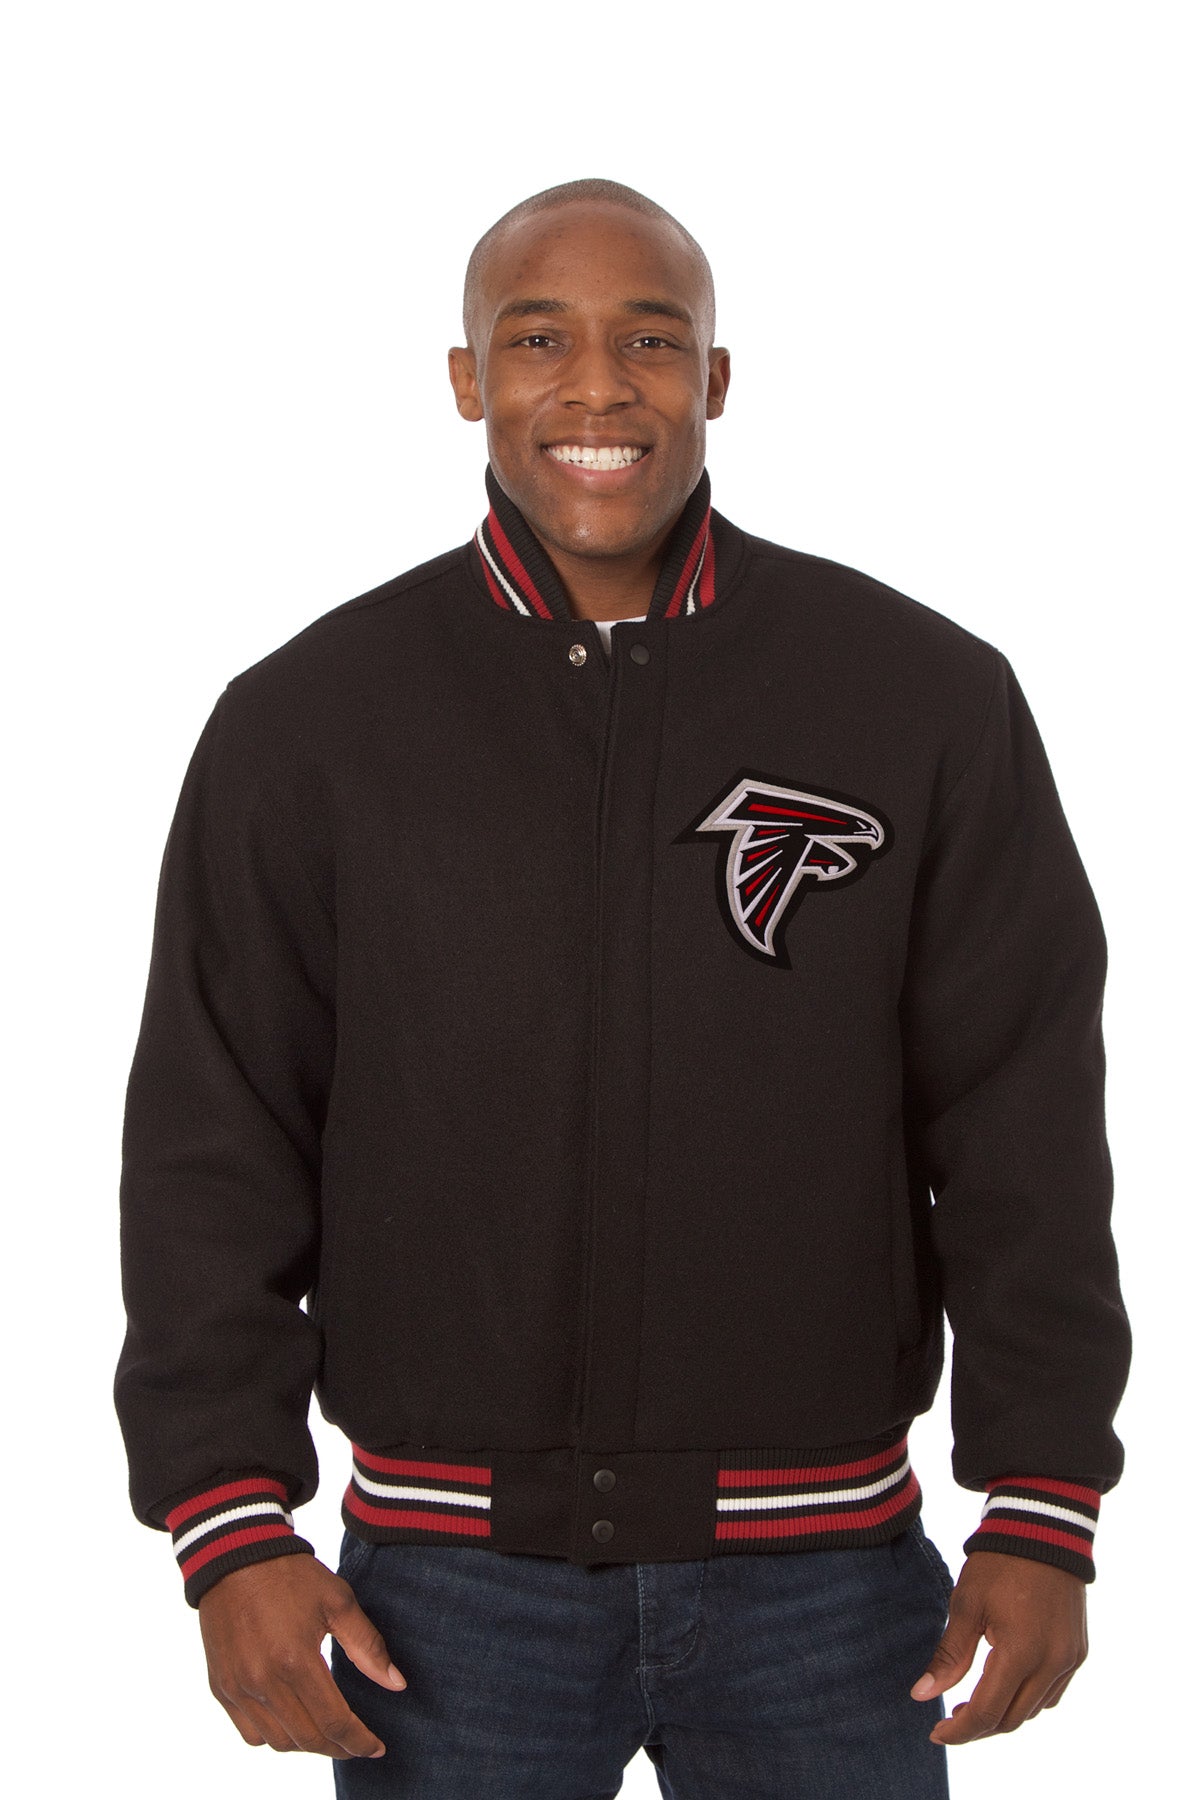 Atlanta Falcons Embroidered Wool Jacket